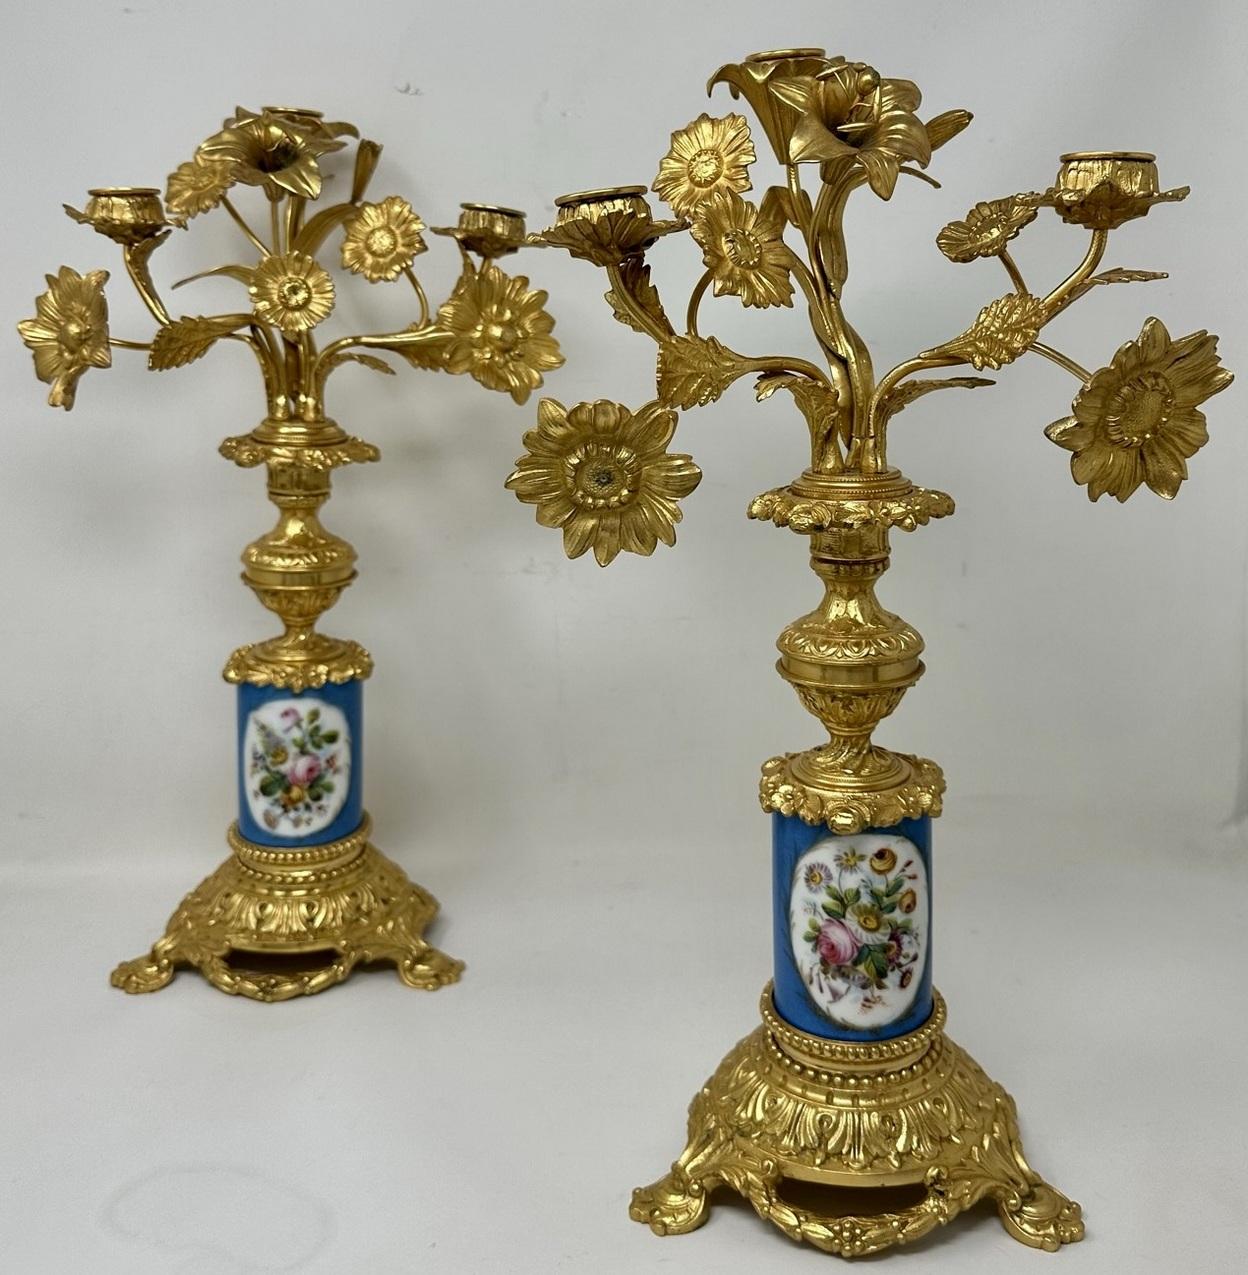 Paire de candélabres de table ou de cheminée en porcelaine de Sèvres à trois lumières, montés sur bronze doré, d'une qualité exceptionnelle et d'un style imposant. Milieu ou fin du XIXe siècle. 

Chacun avec trois branches en volutes avec diverses